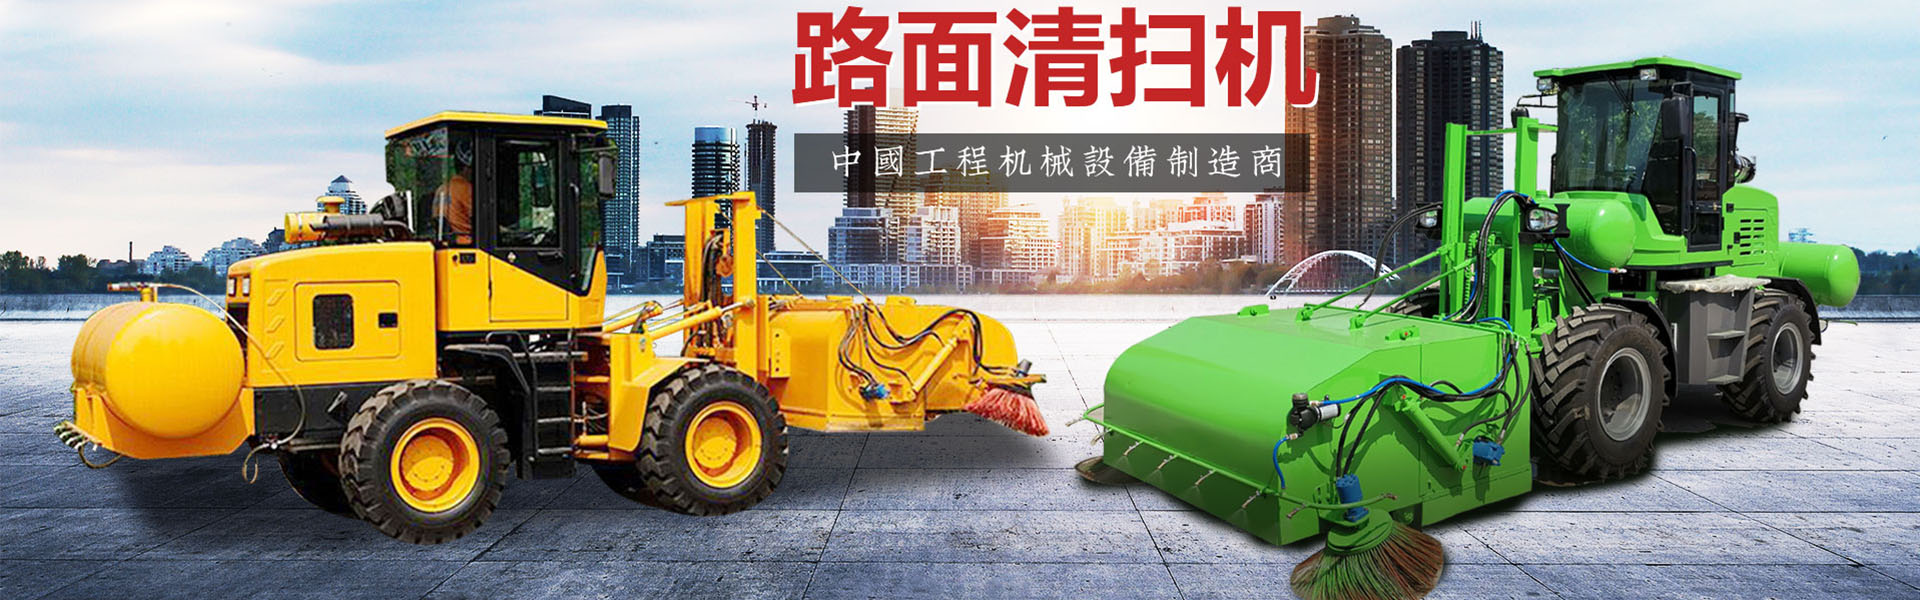 青州市亚斯柏特环保科技有限公司.